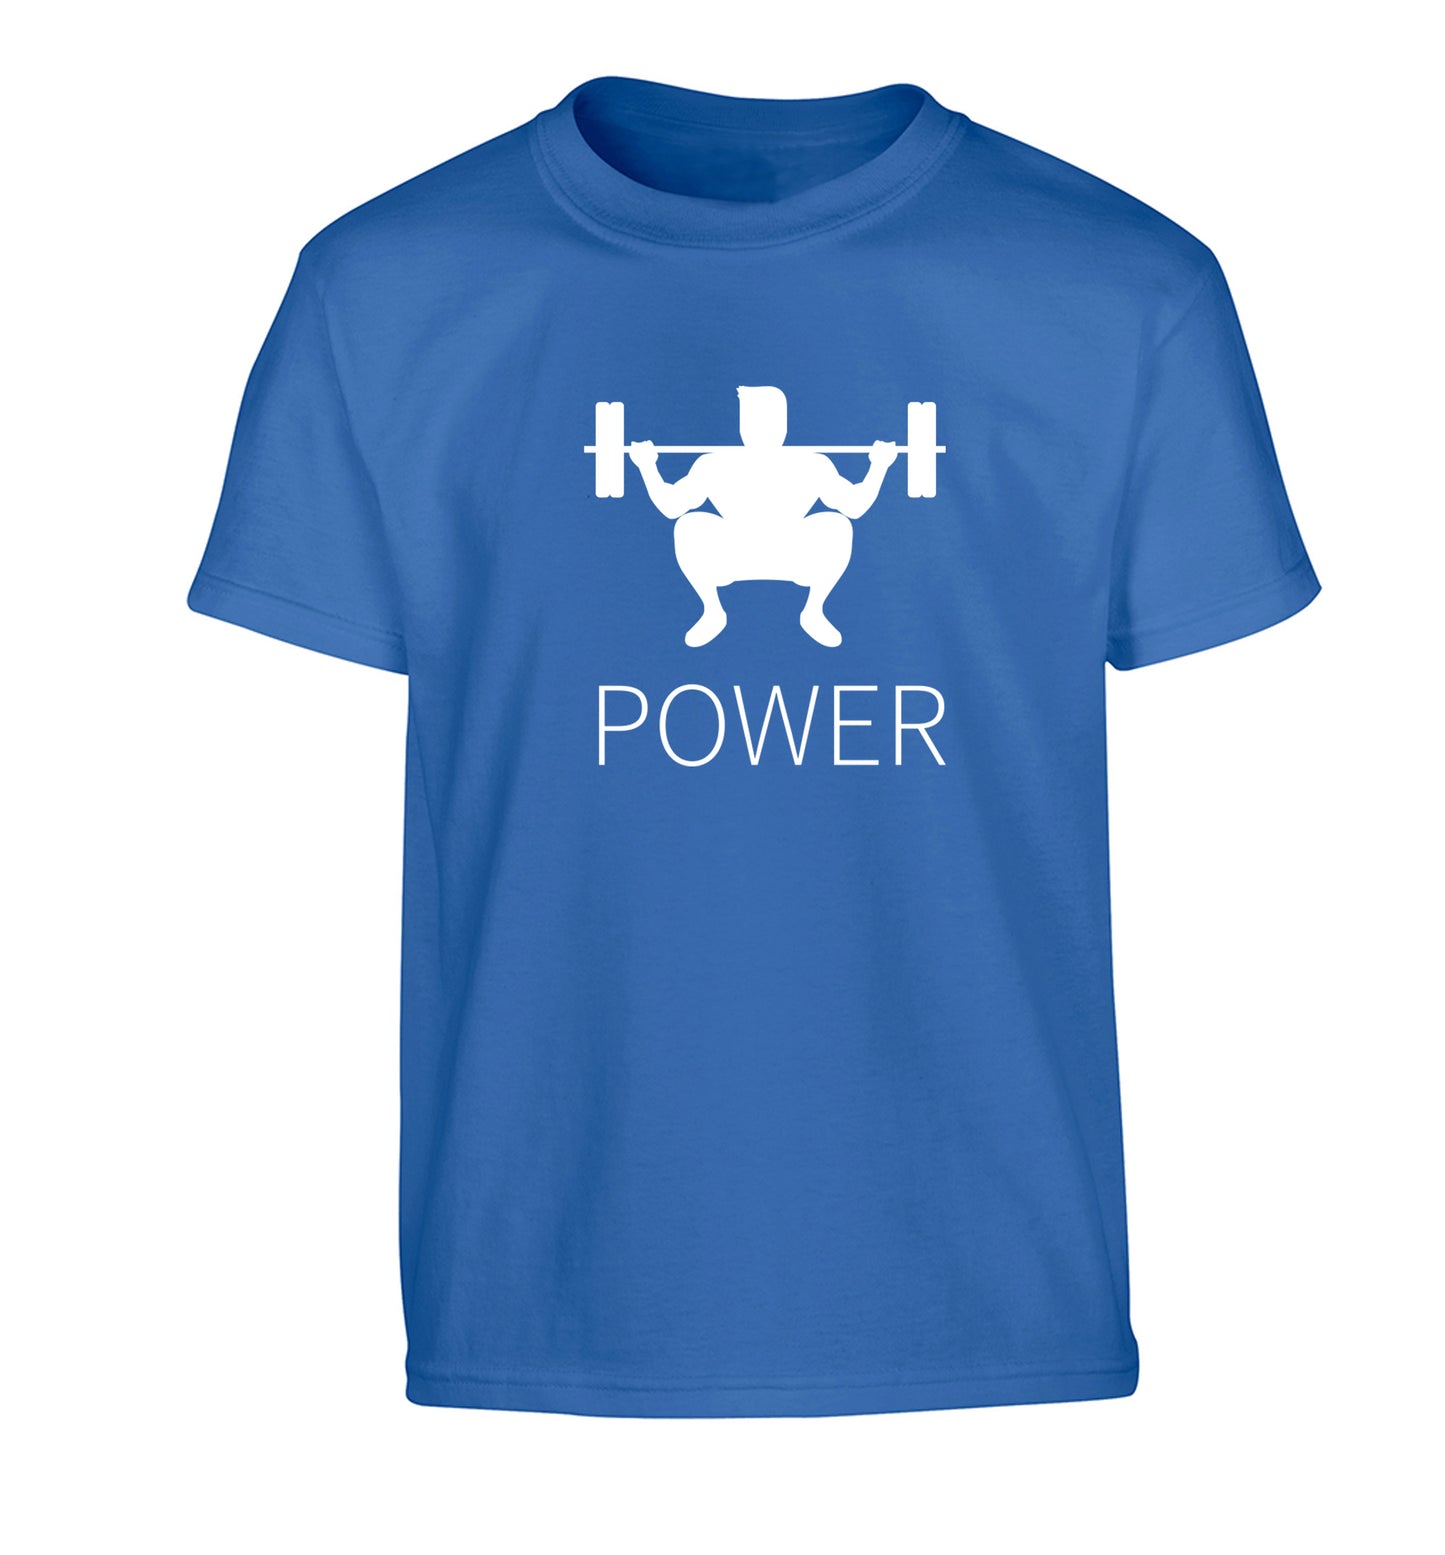 Lift power Children's blue Tshirt 12-13 Years